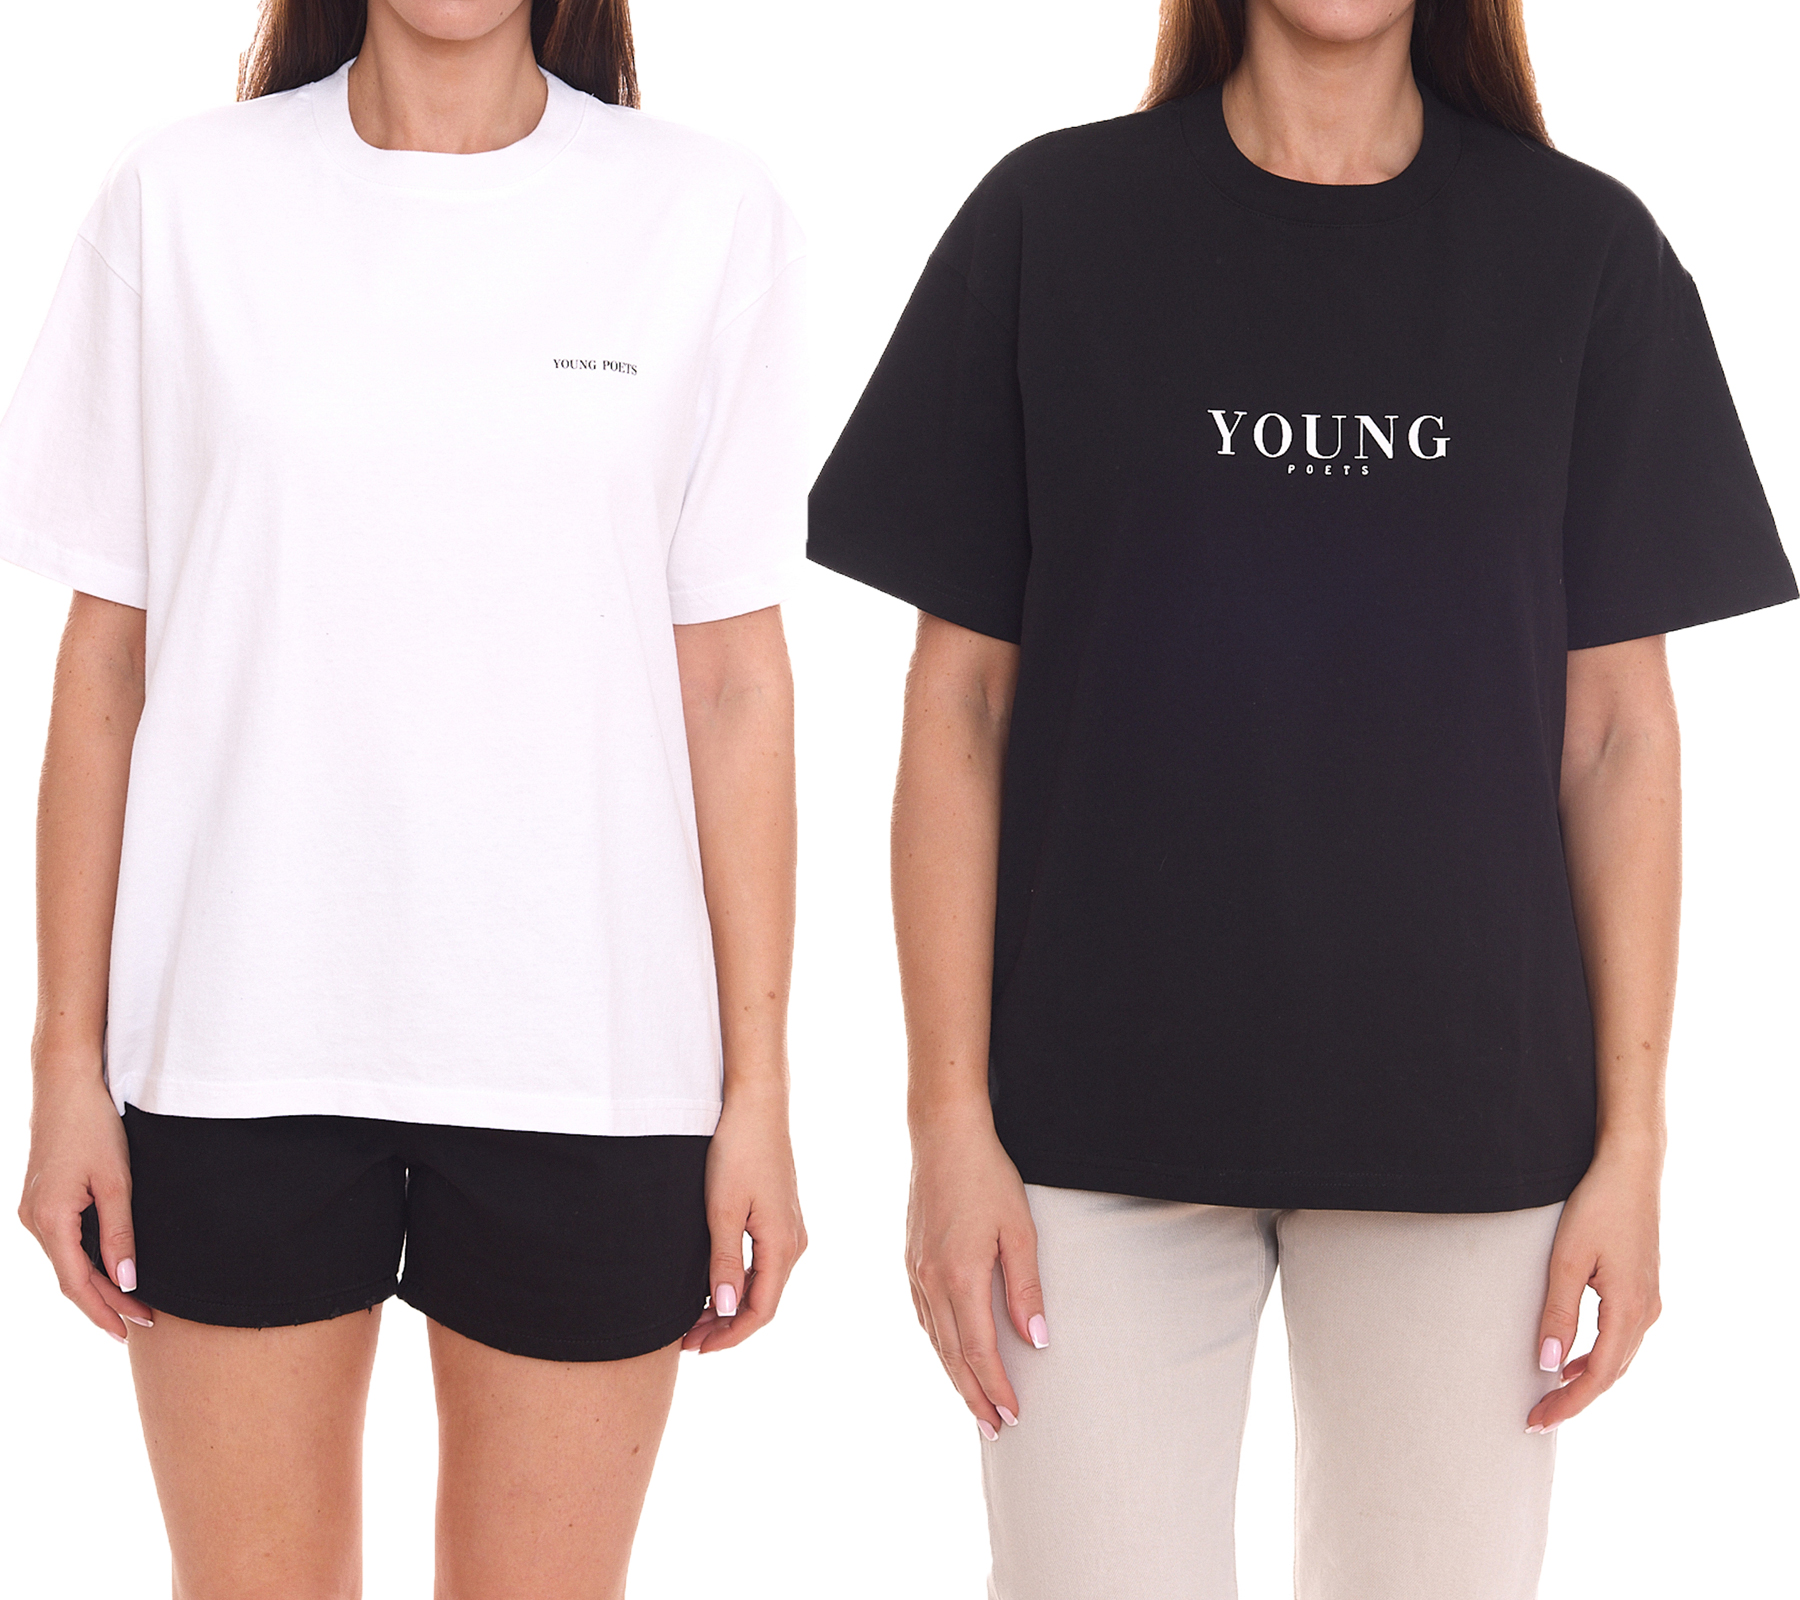 YOUNG POETS Damen nachhaltiges Baumwoll-Shirt Rundhals-Shirt mit Markenschriftzug Schwarz oder Weiß von YOUNG POETS